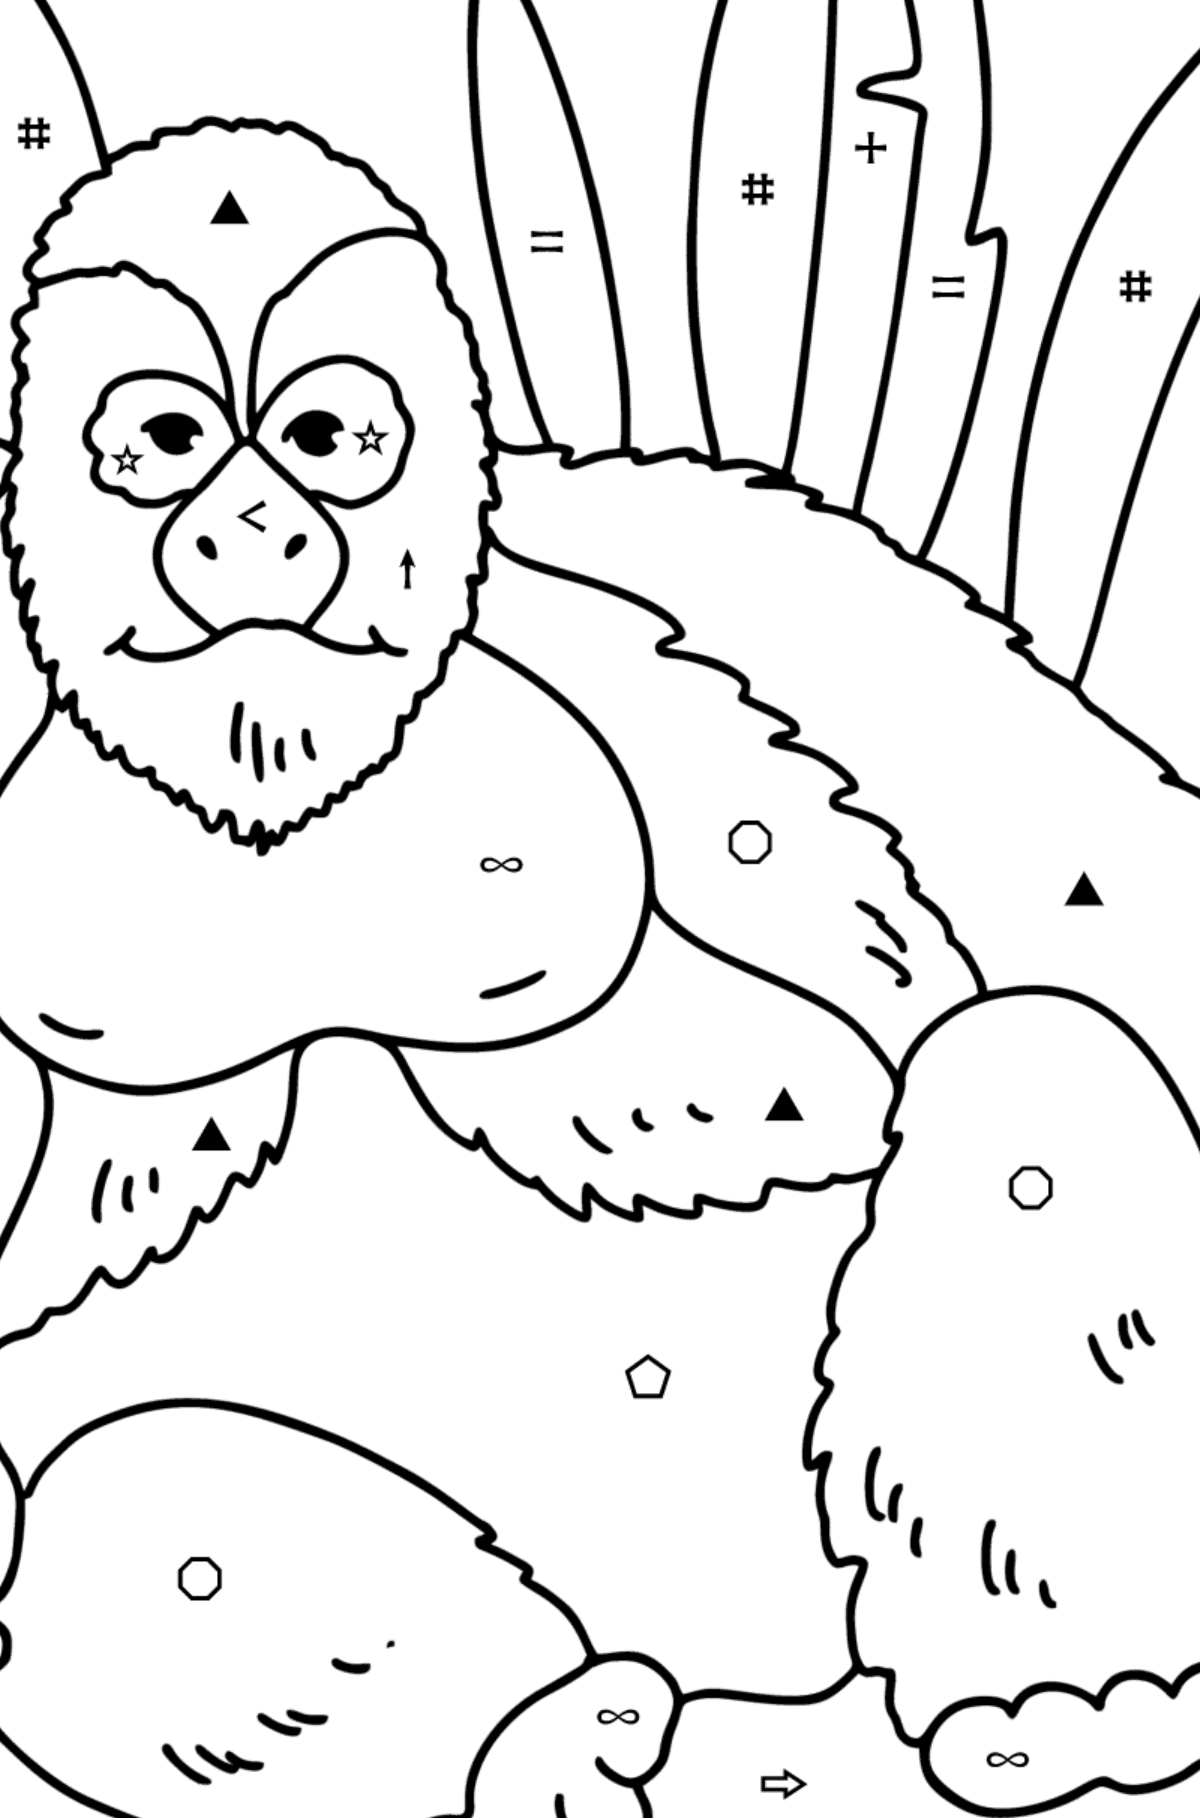 Disegno da colorare Gorilla - Colorare per simboli e forme geometriche per bambini